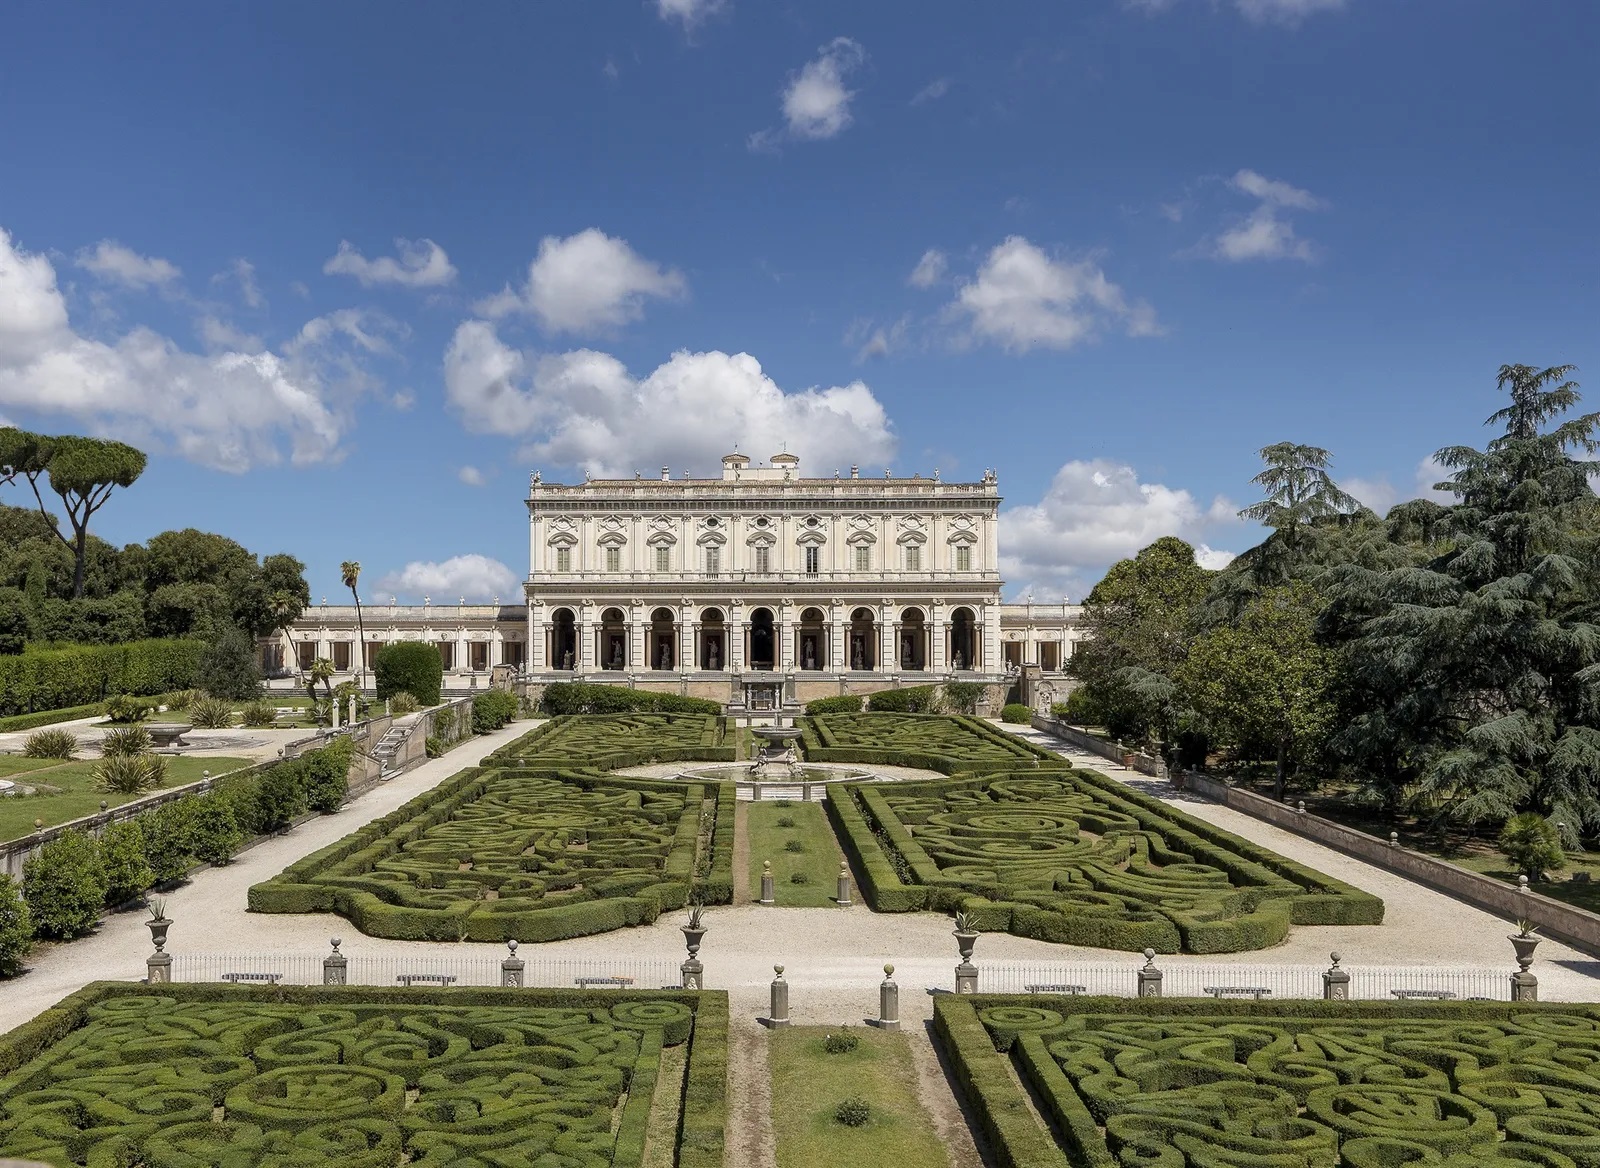 The Torlonia Foundation in Rome opens the antiquarium of Villa Albani to the public 54